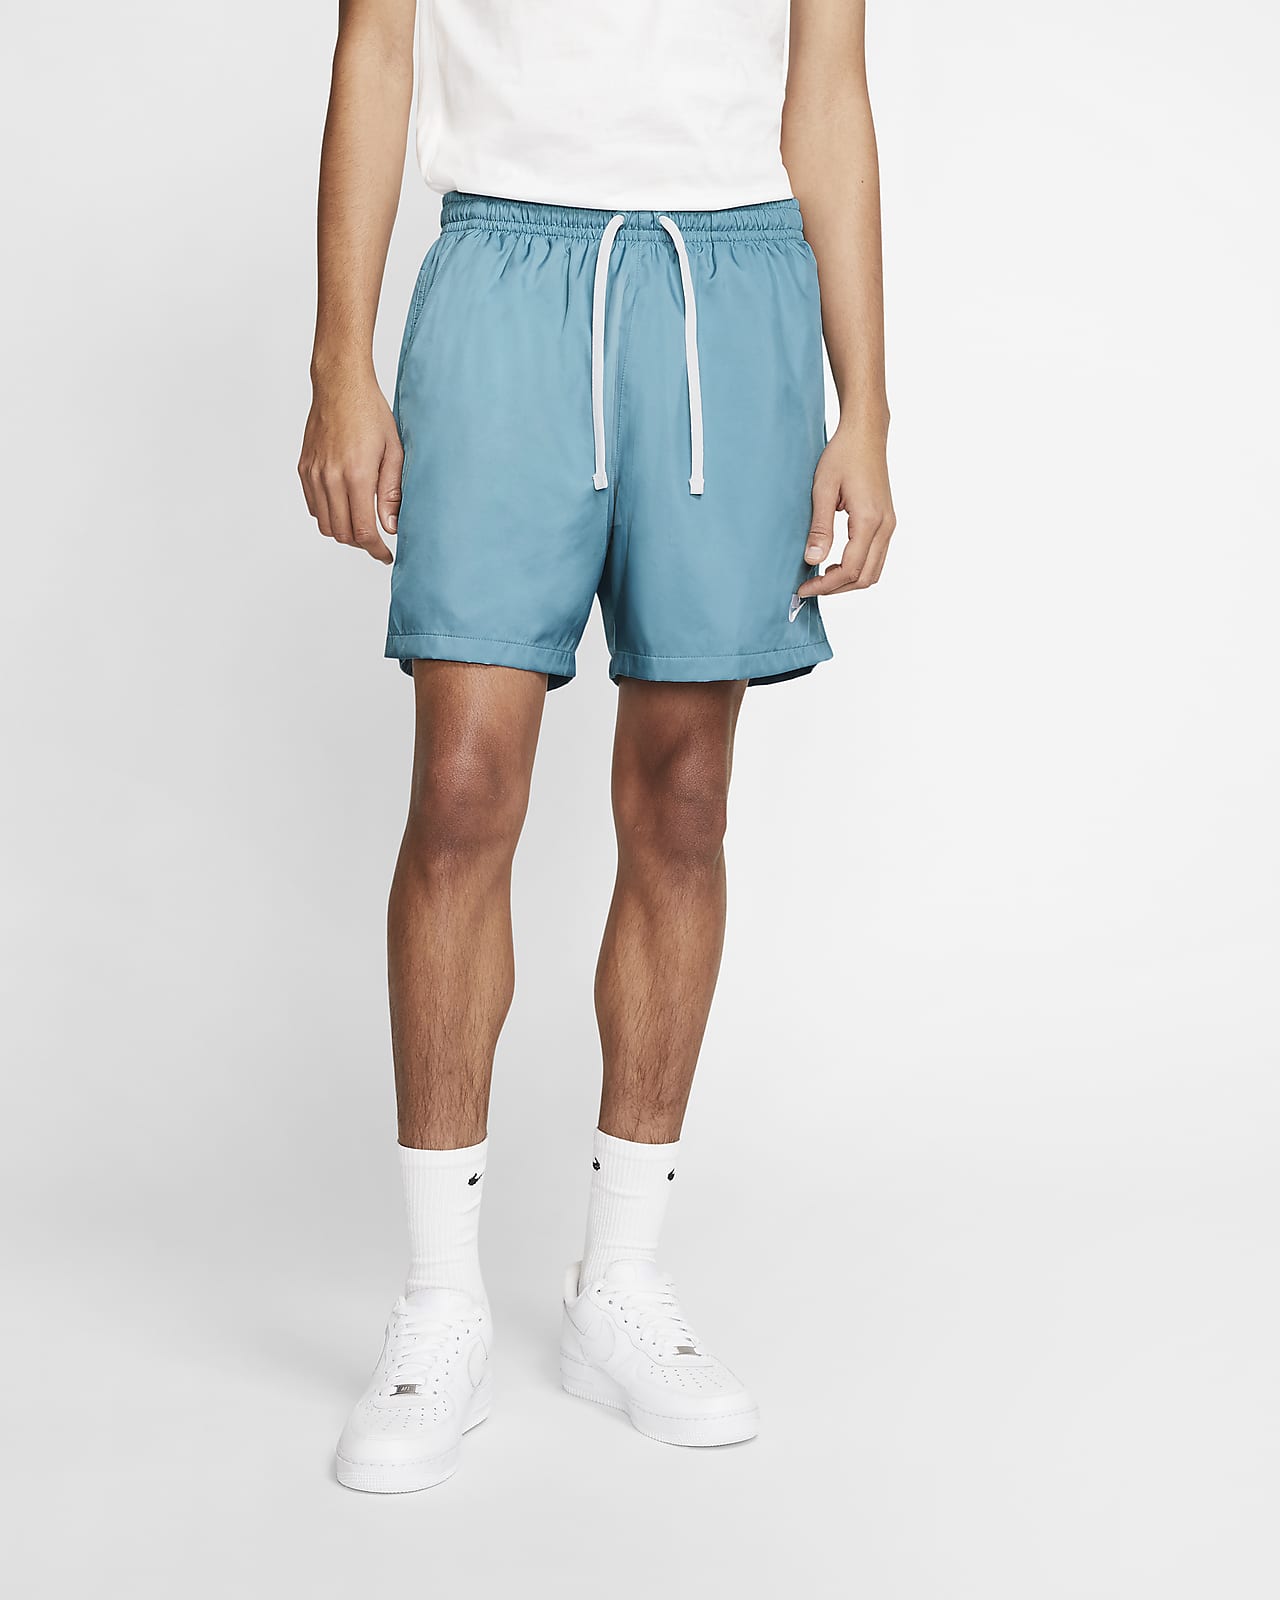 men's woven shorts nike sportswear